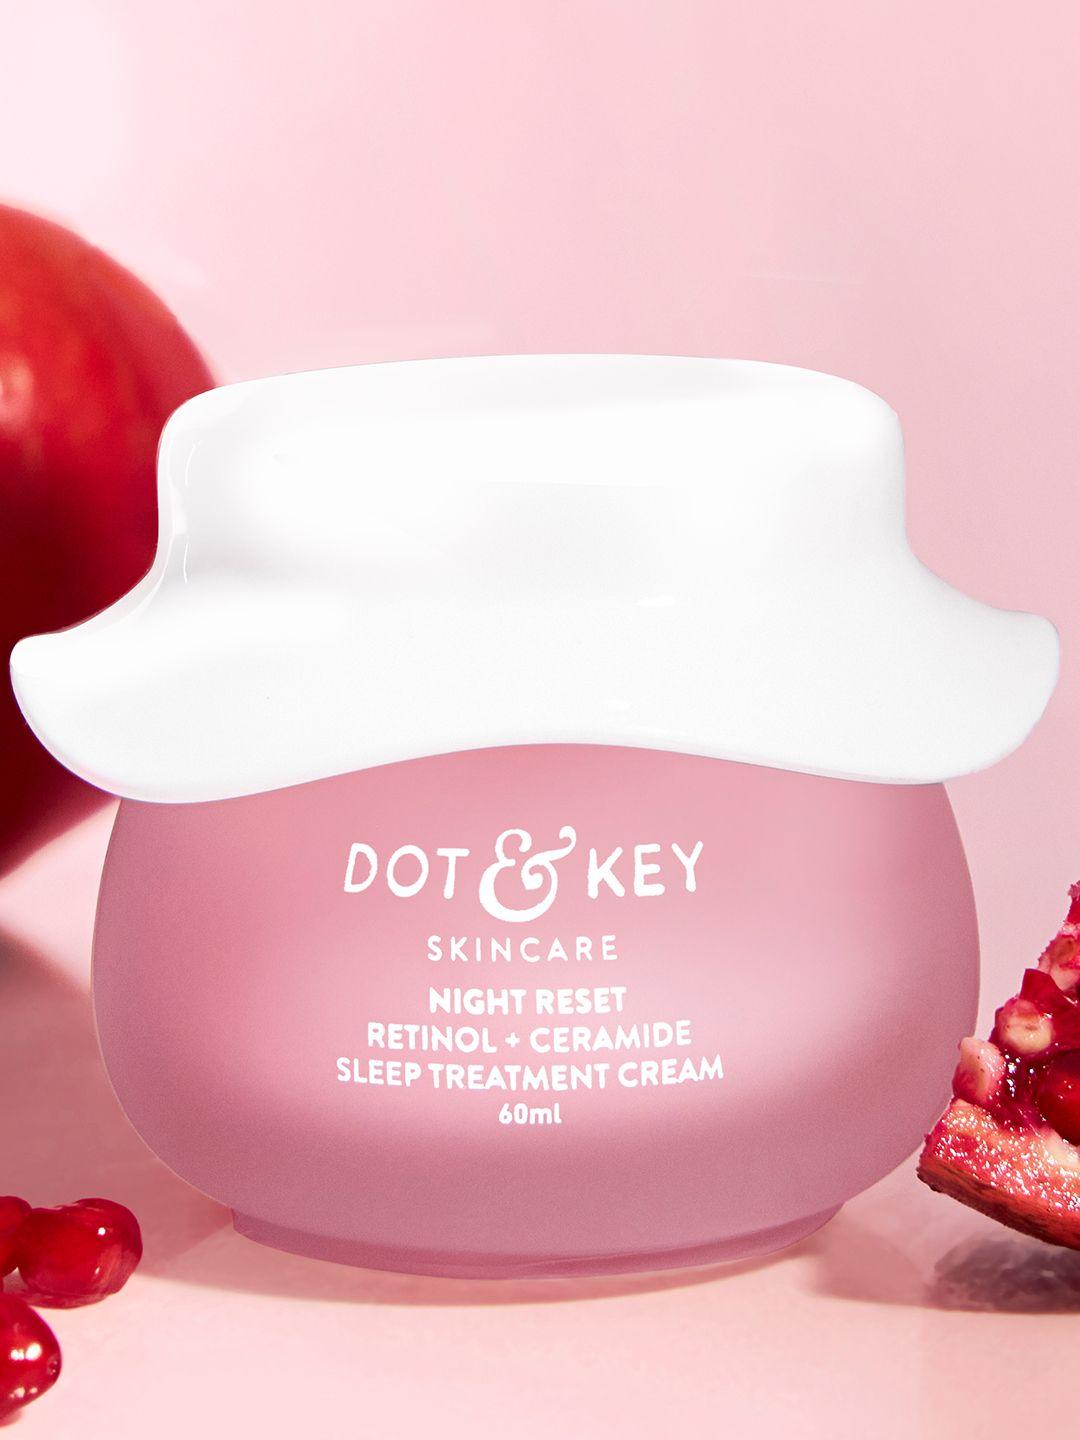 dot & key retinol + ceramides night repair cream with hibiscus & pomegranate oil - 60ml